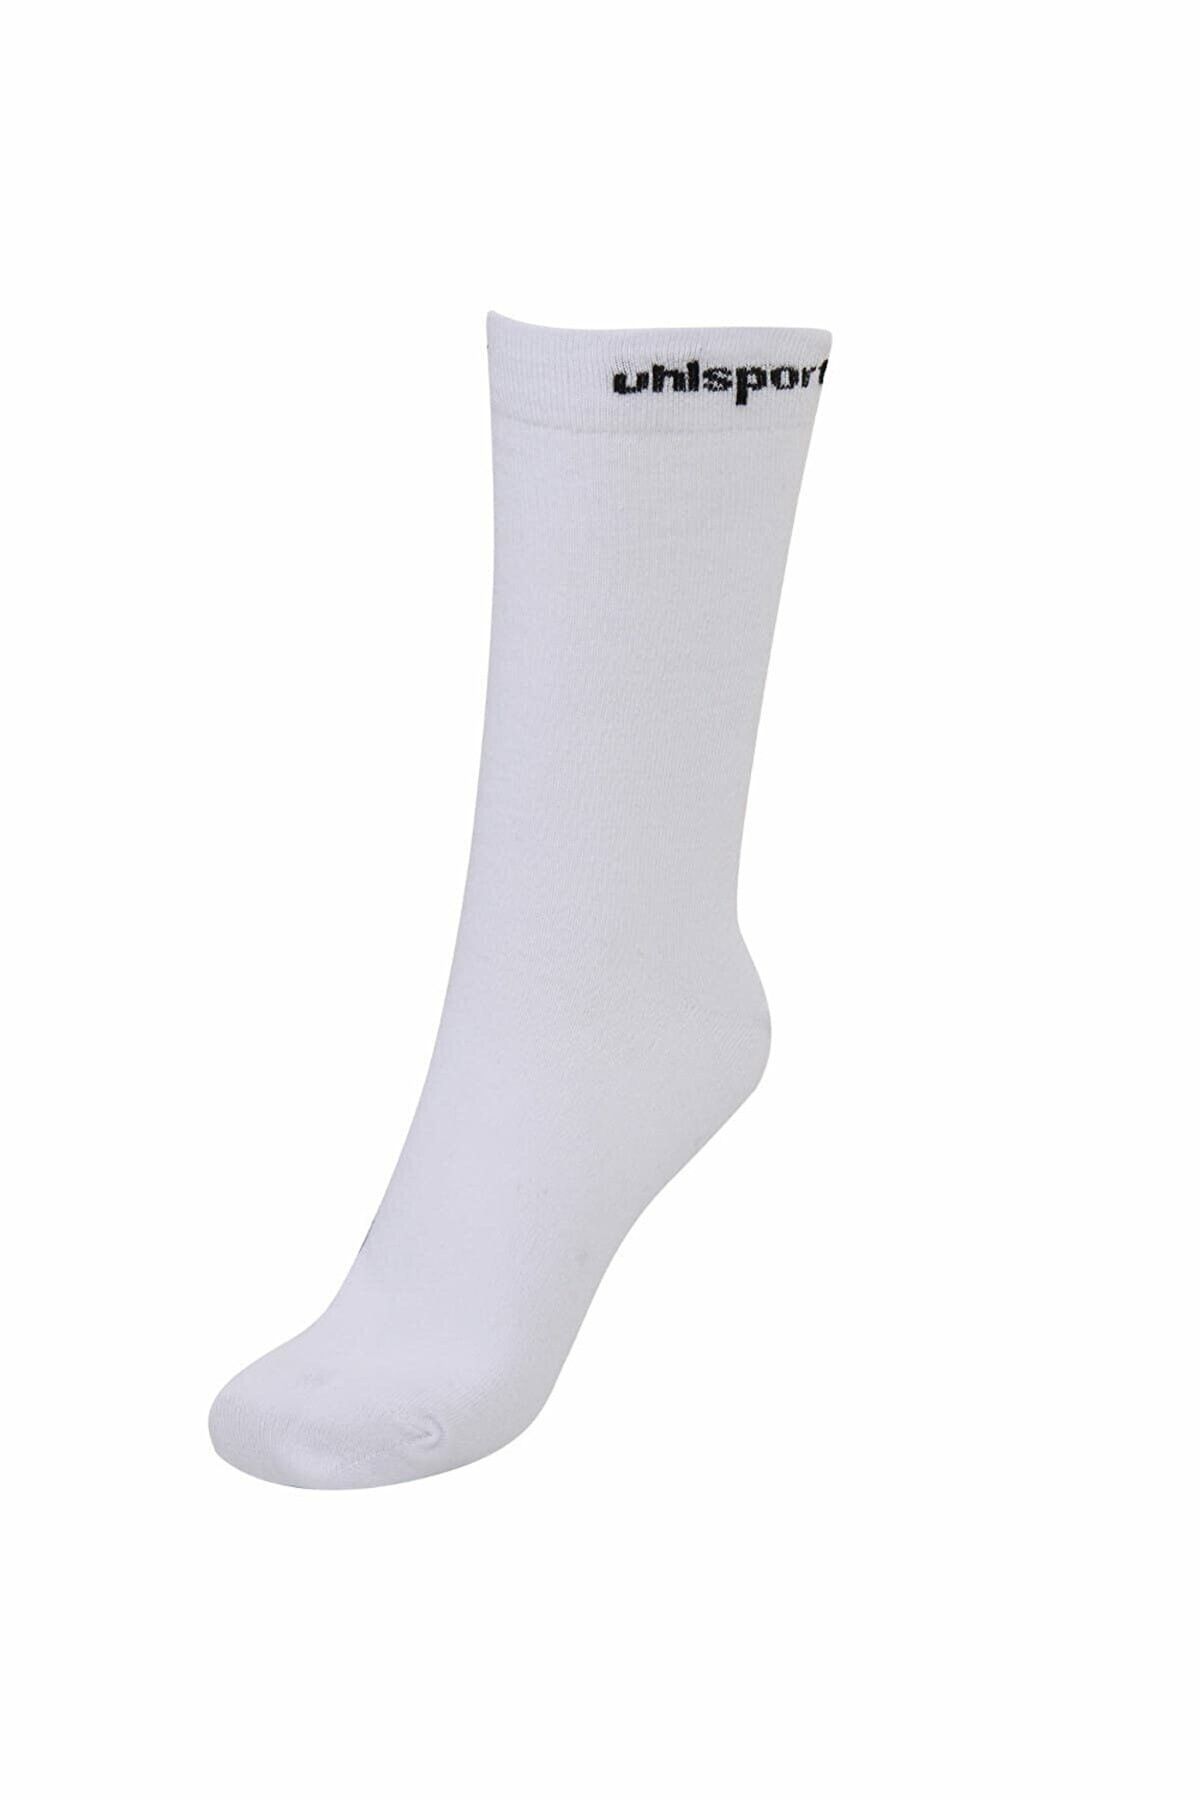 uhlsport 1003015 Antreman Çorabı 1003015 Beyaz Siyah Çorap